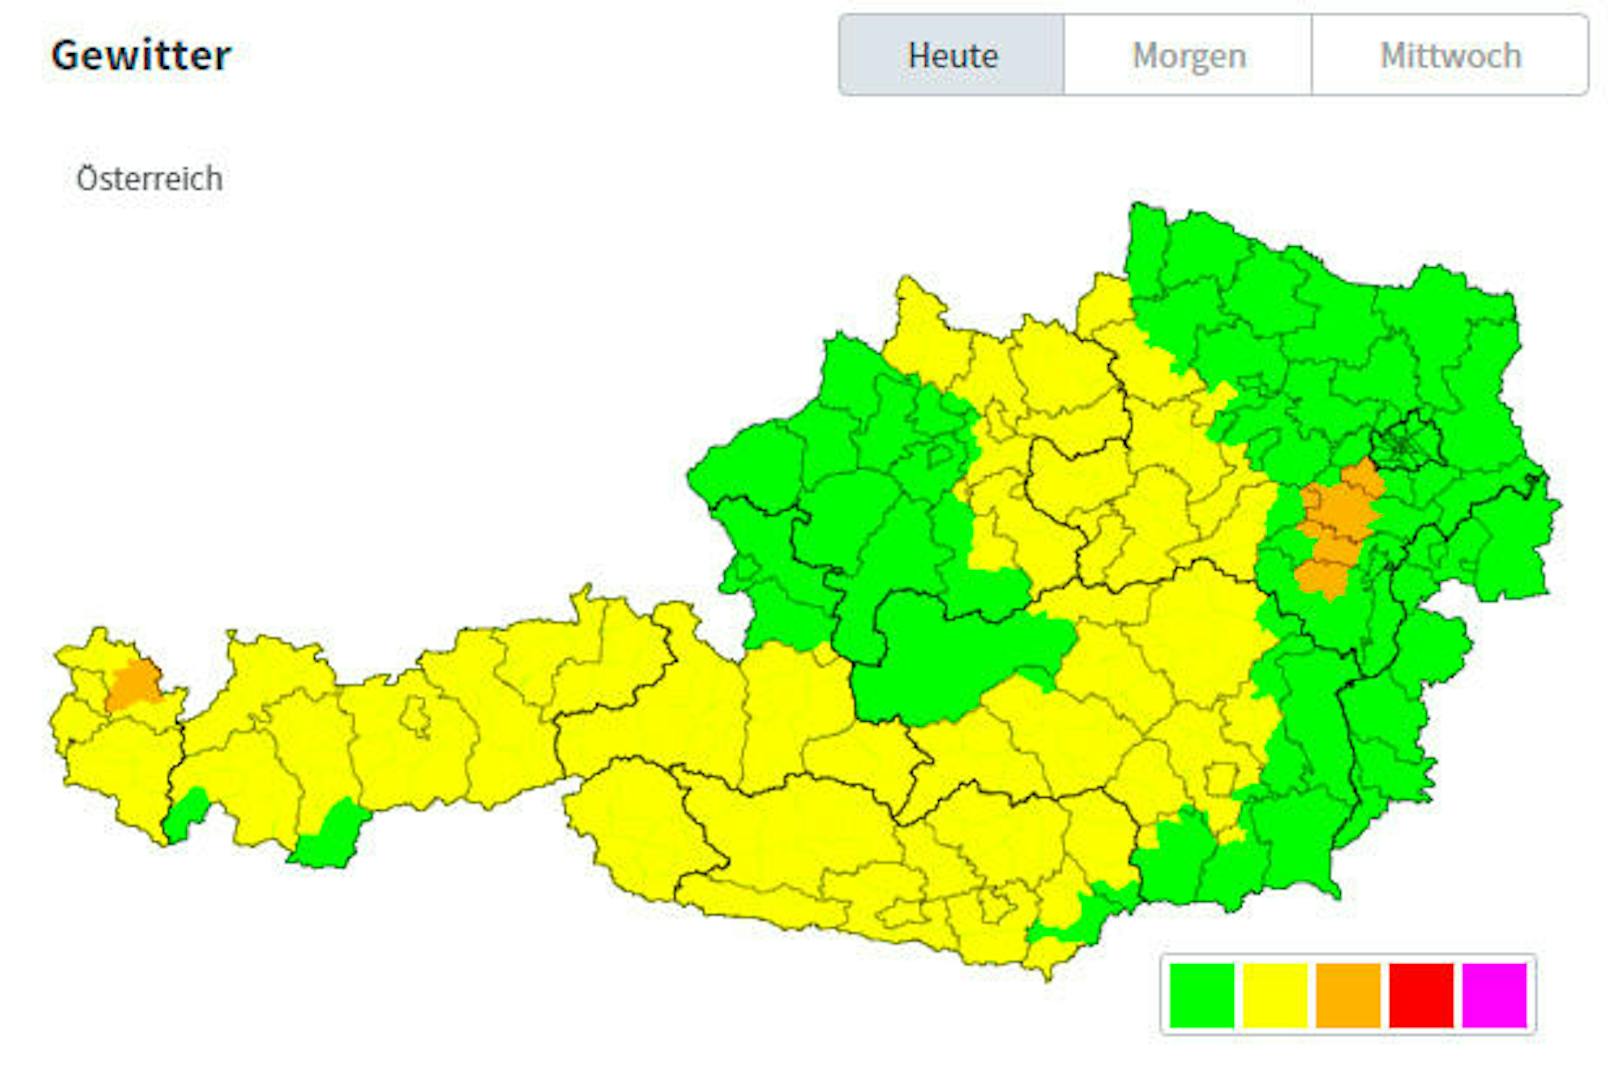 Am heutigen Montag besteht in vielen Regionen erhöhte Gewittergefahr. Besonders betroffen ist laut UWZ die Wienerwaldregion bei Baden und Wiener Neustadt.